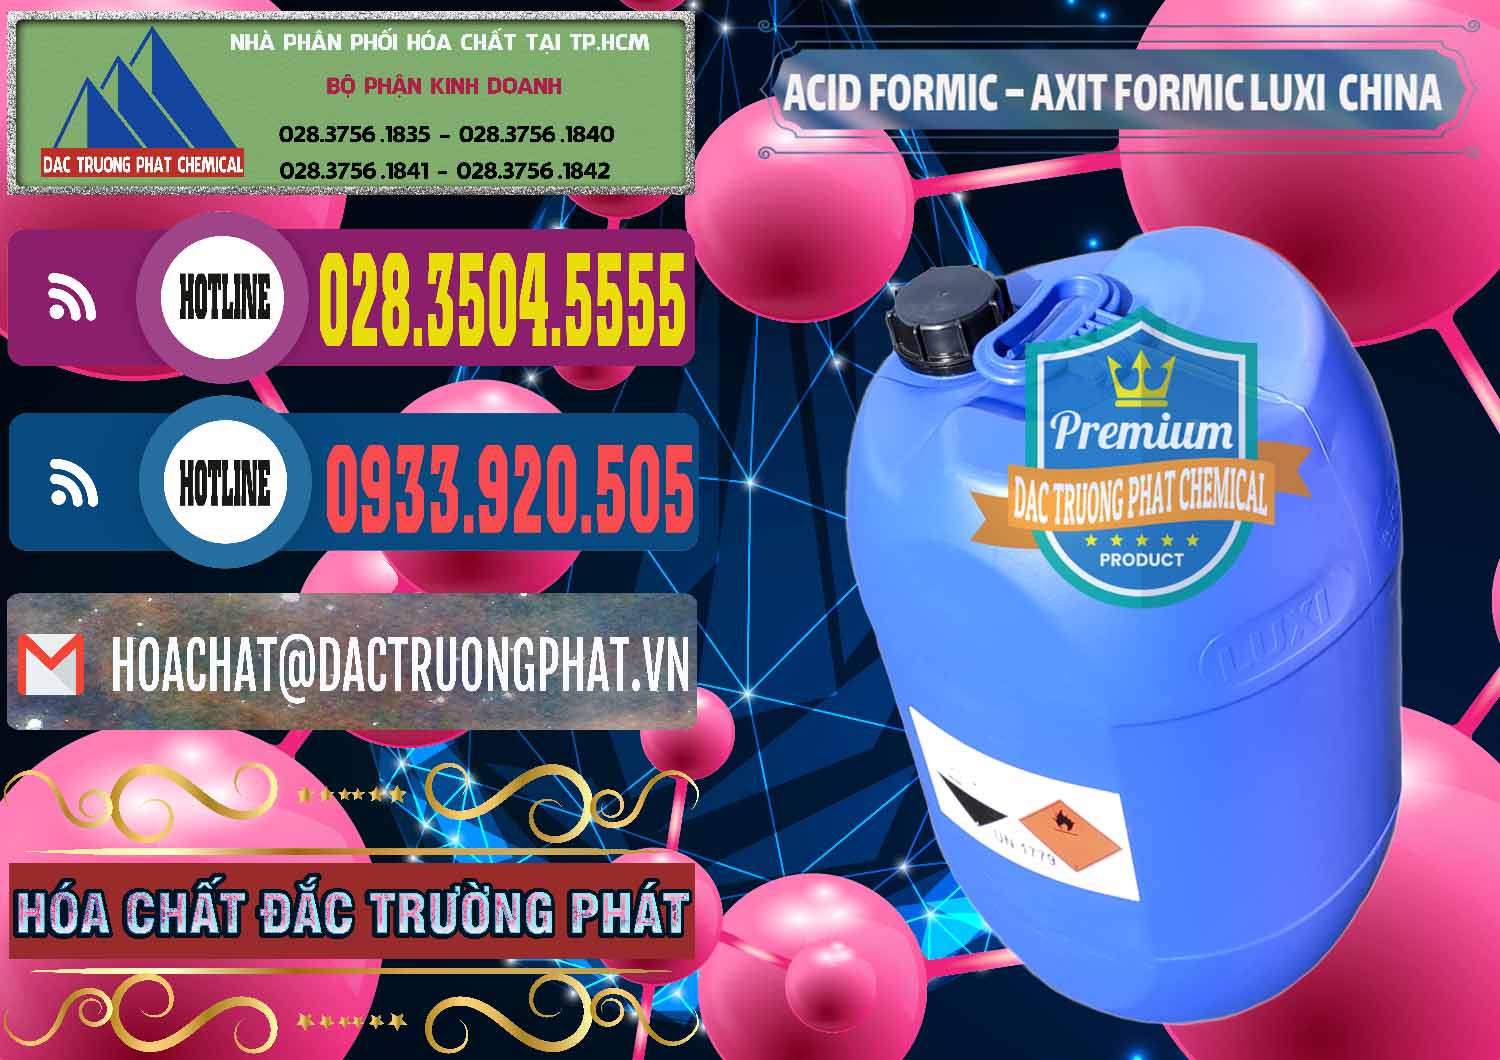 Nơi kinh doanh và bán Acid Formic - Axit Formic Luxi Trung Quốc China - 0029 - Nhà cung cấp ( nhập khẩu ) hóa chất tại TP.HCM - muabanhoachat.com.vn